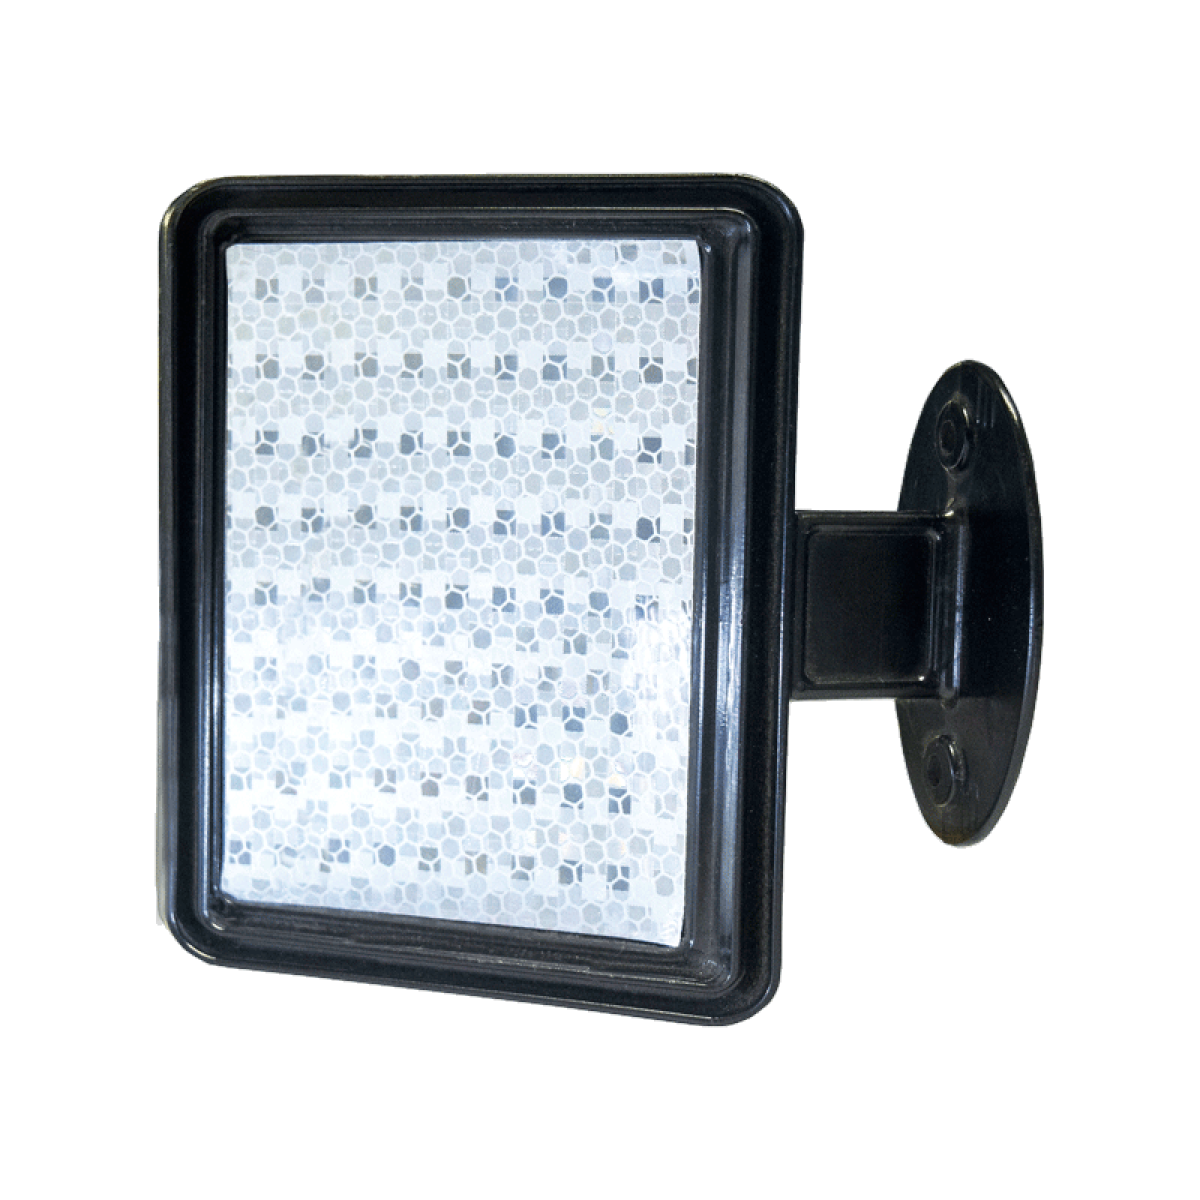 La ménsula reflejante para barreras proporciona una guía visual bastante efectiva en entornos de poca luz. Cuenta con materiales de alta durabilidad.